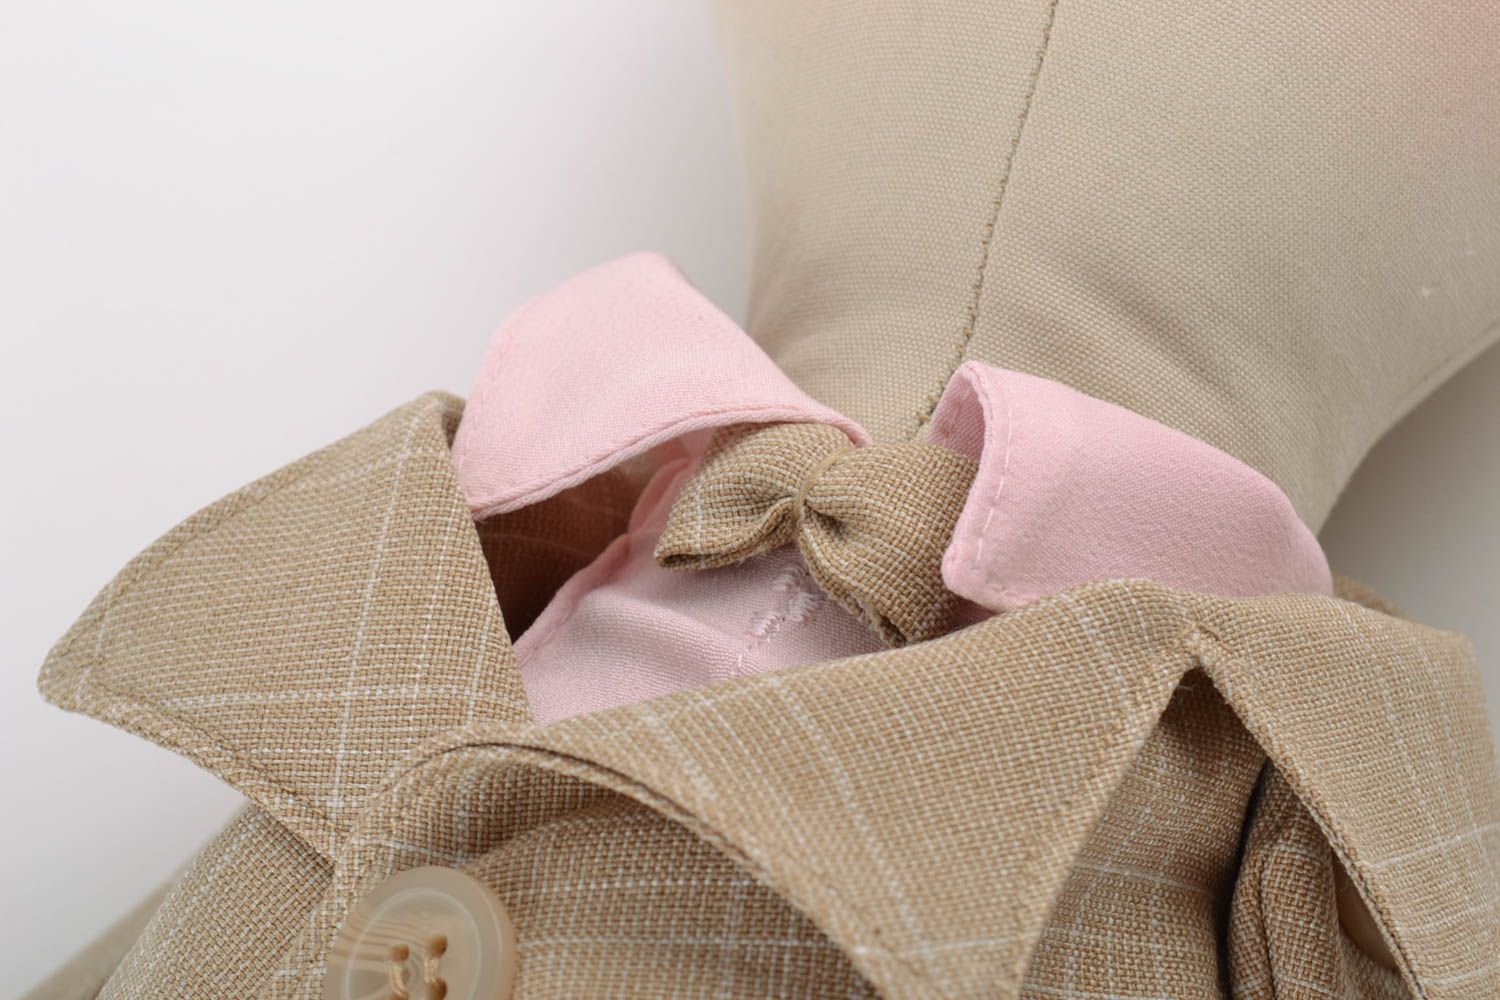 Textil Kuscheltier Kater im Anzug aus Leinen Spielzeug für Kinder  foto 3